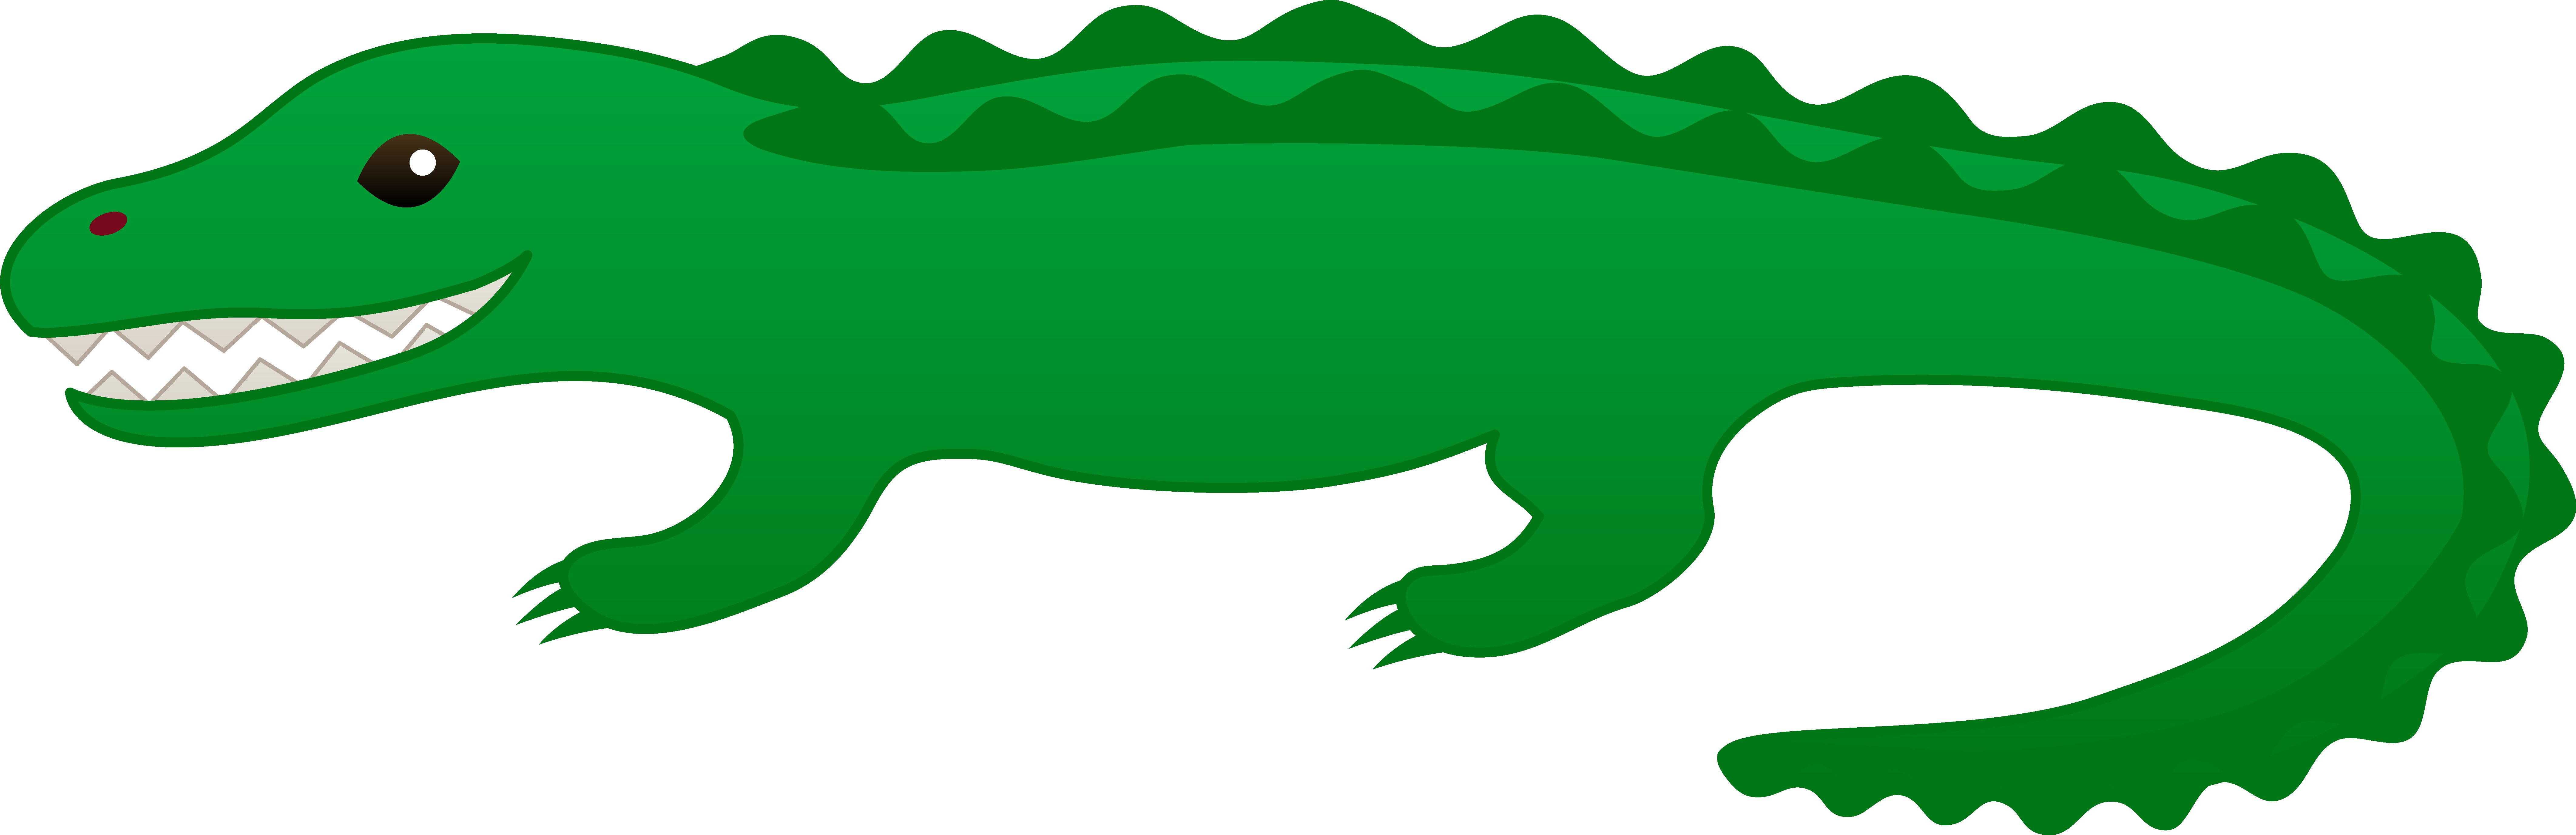 Cute Green Alligator Clip Art - Free Clip Art